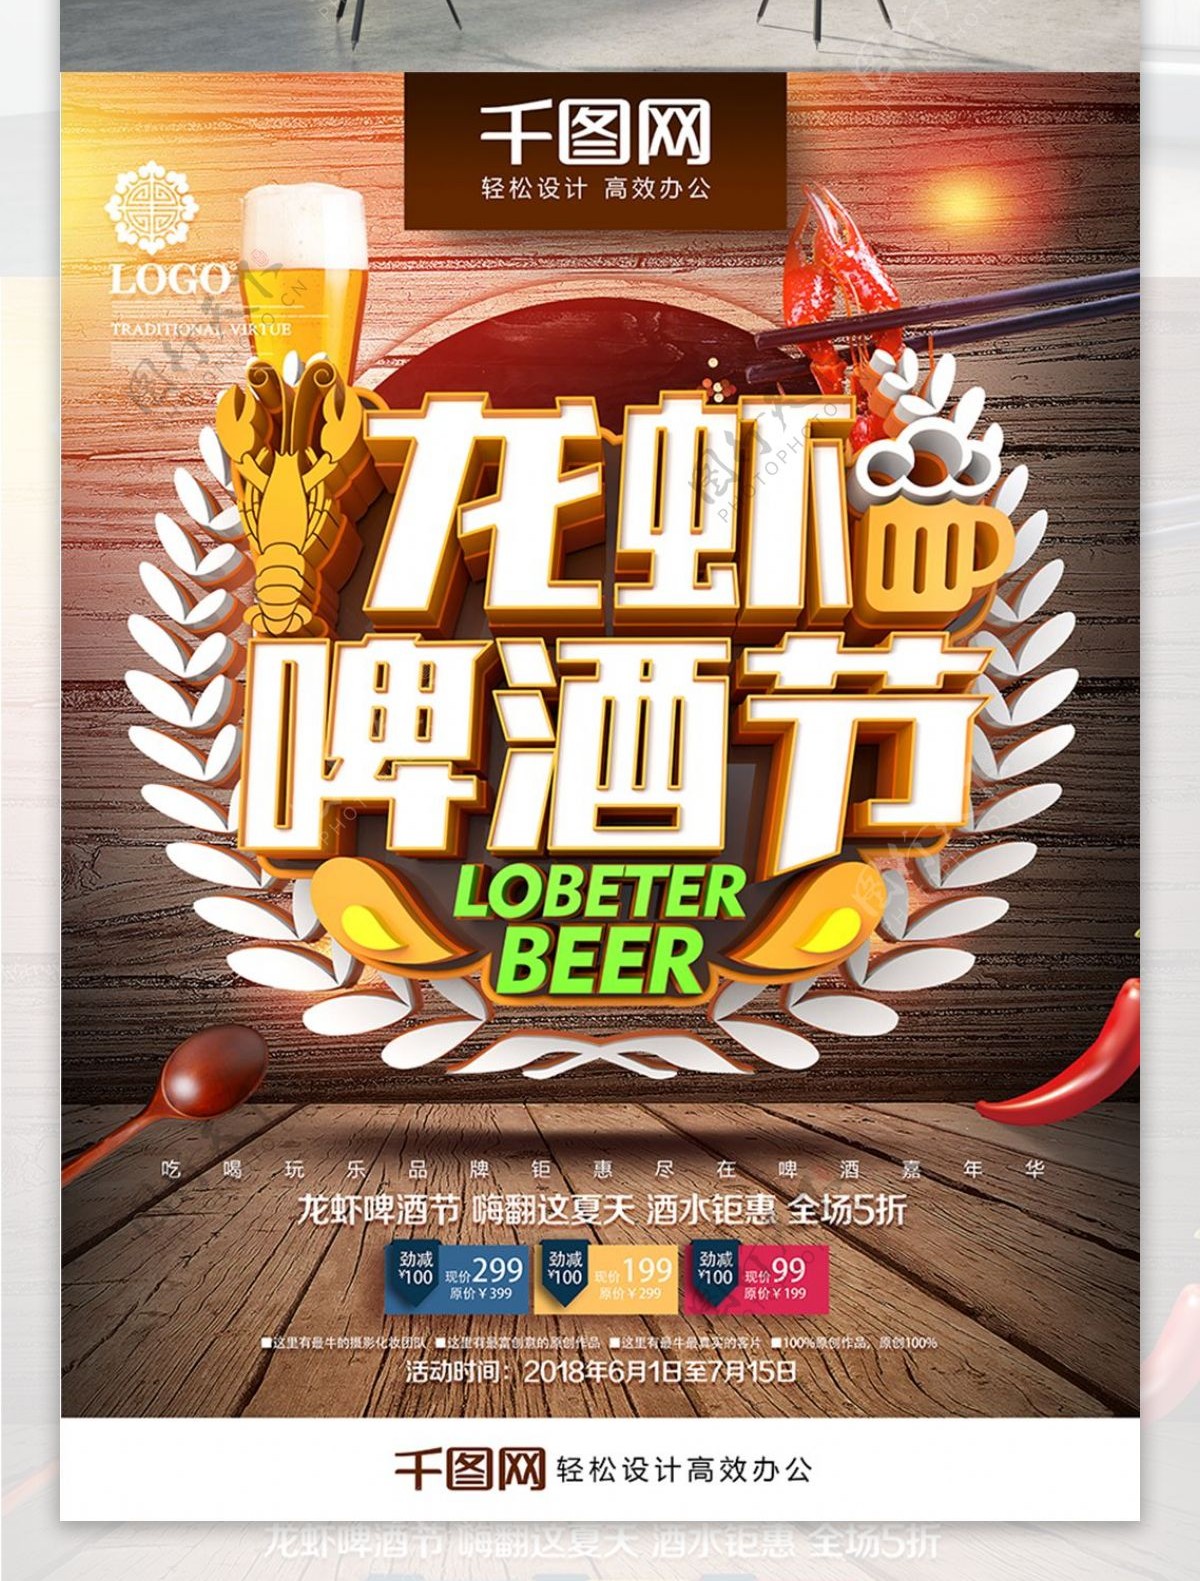 创意时尚立体龙虾啤酒节啤酒节促销宣传海报